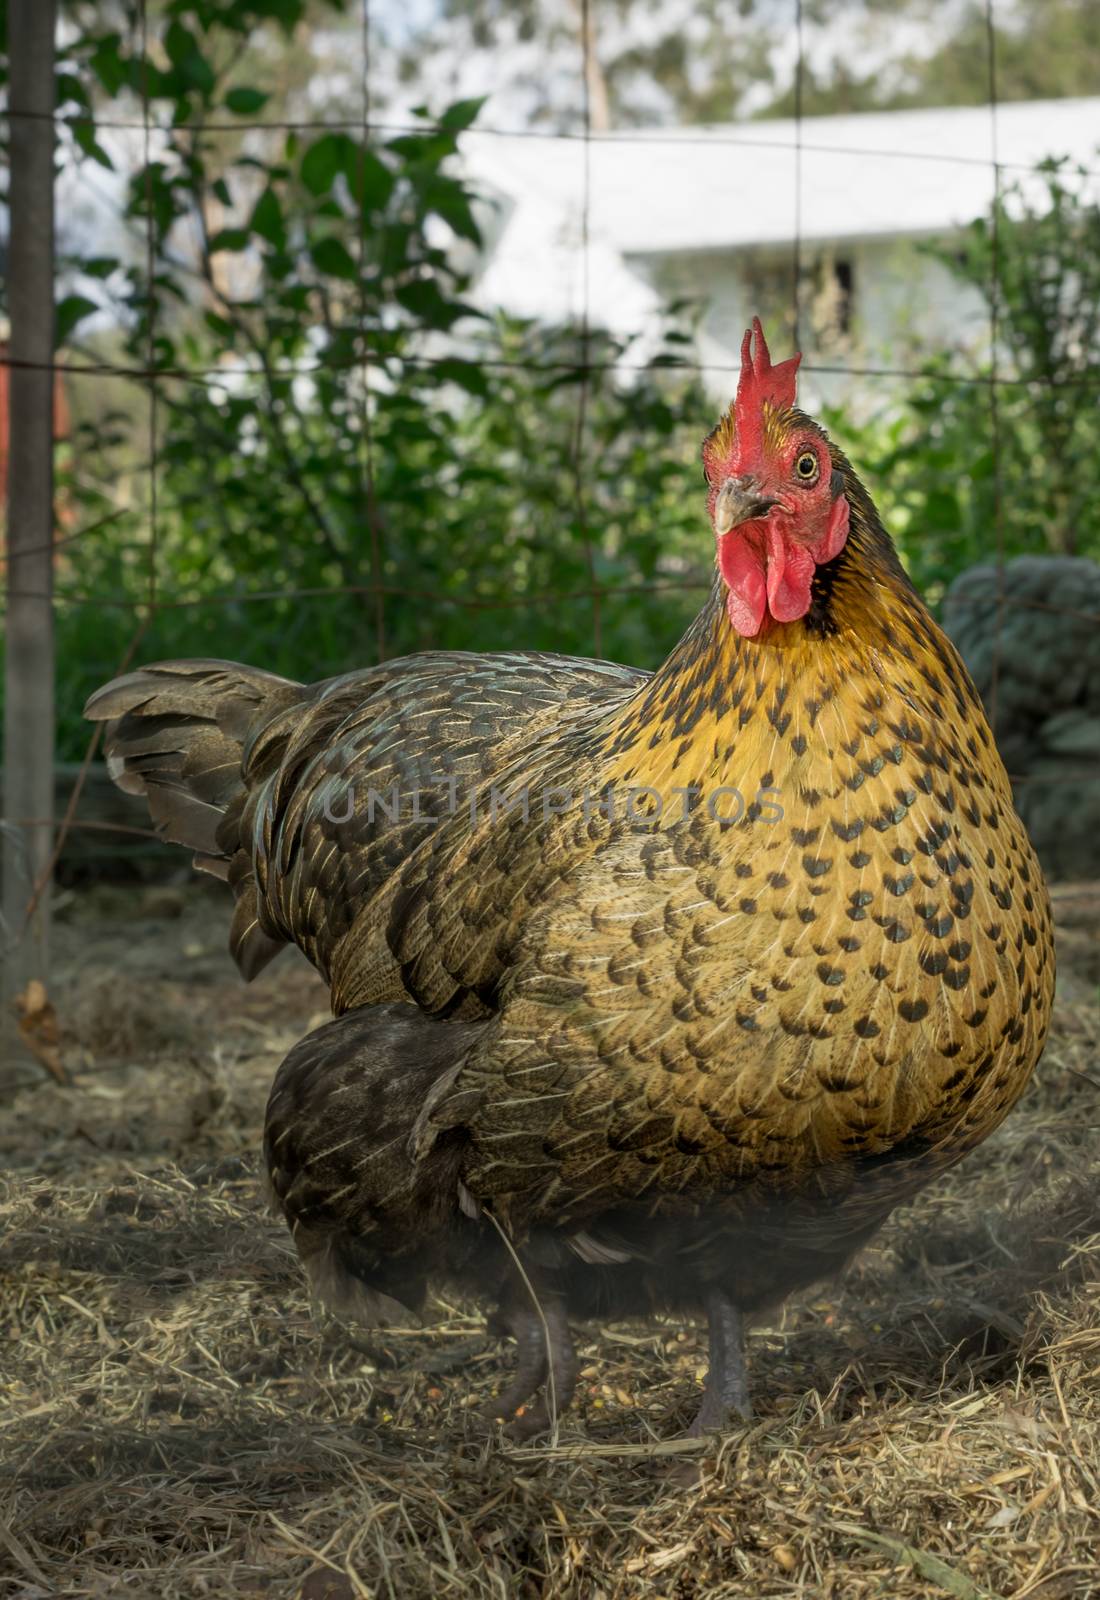 Backyard Poultry bantam hen free range raised for fresh organic eggs